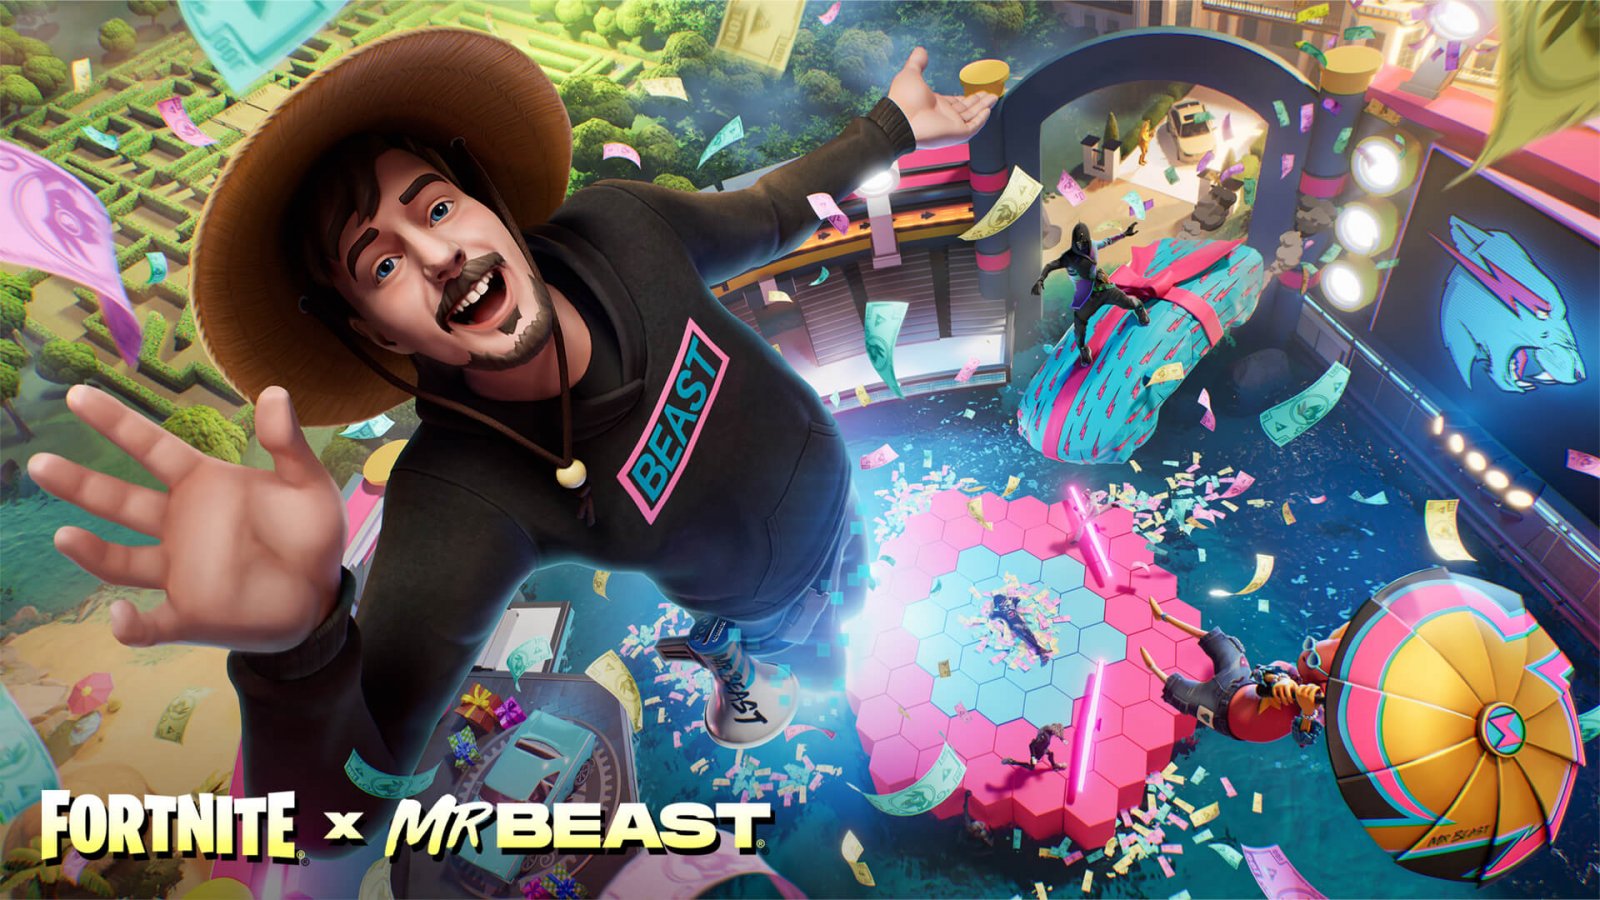 Fortnite: Mr Beast arriva nel gioco e mette in premio un milione di dollari, come vincere